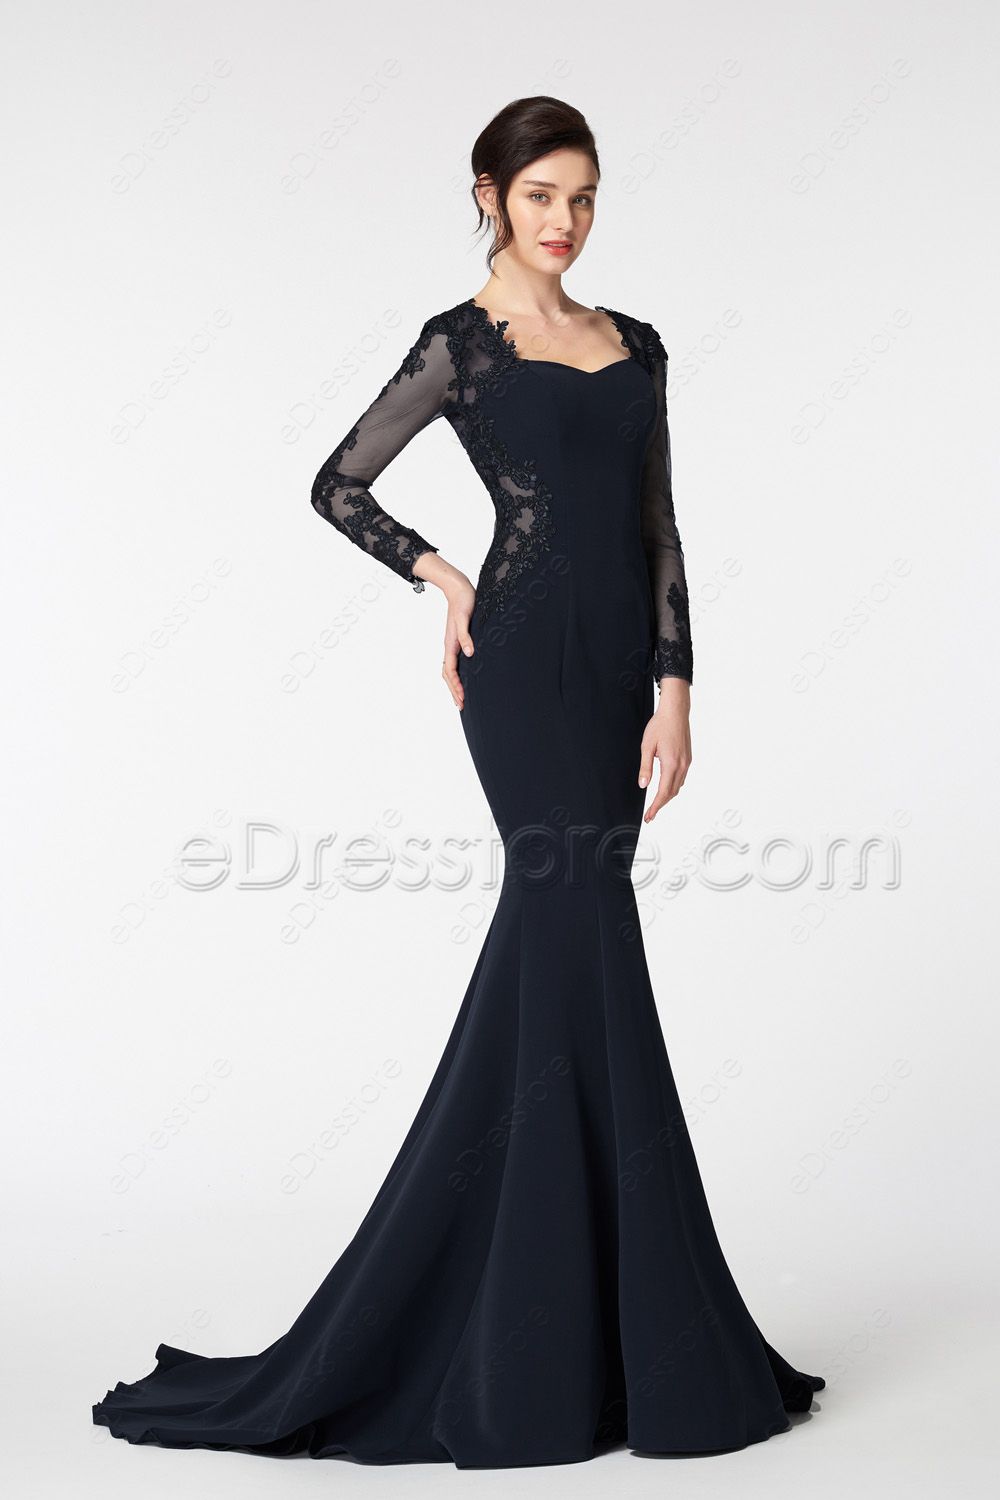 Mermaid Black Evening Dresses Long Sleeves | eDresstore